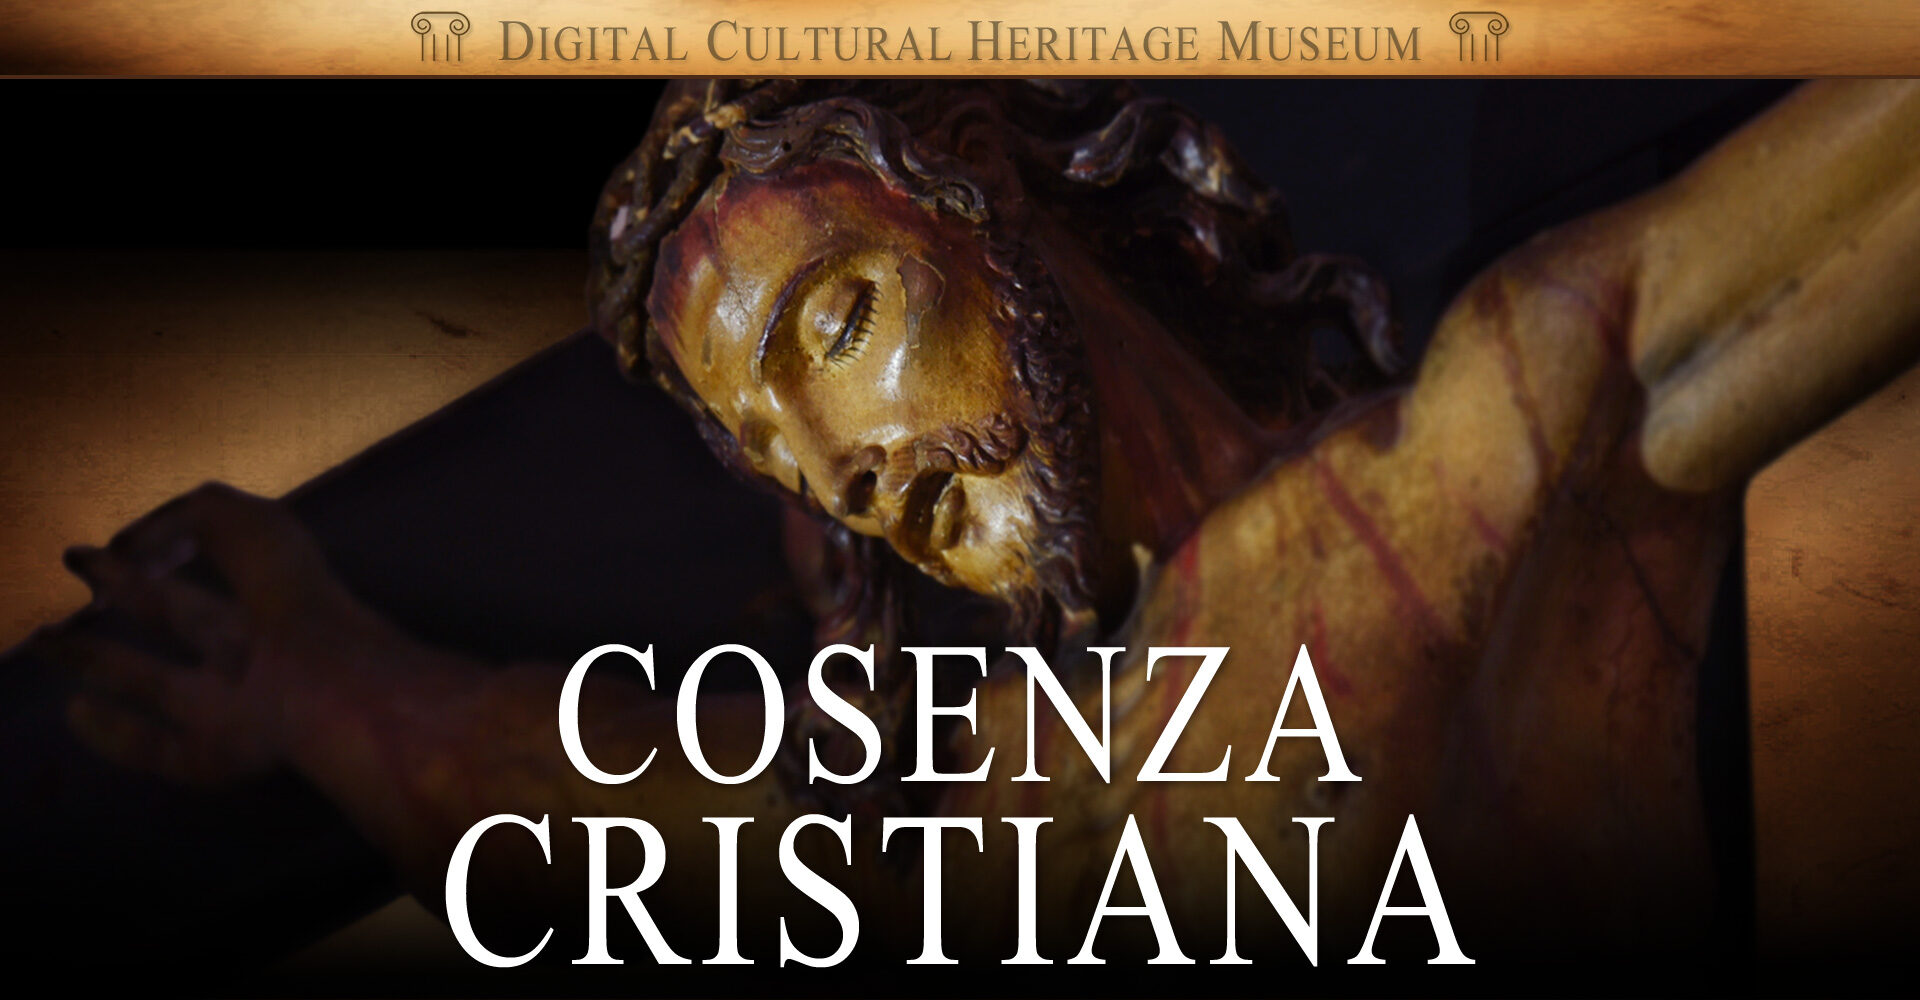 Cosenza Cristiana: Arte, Turismo, Bellezza del Sacro, Cultura, Città Storiche